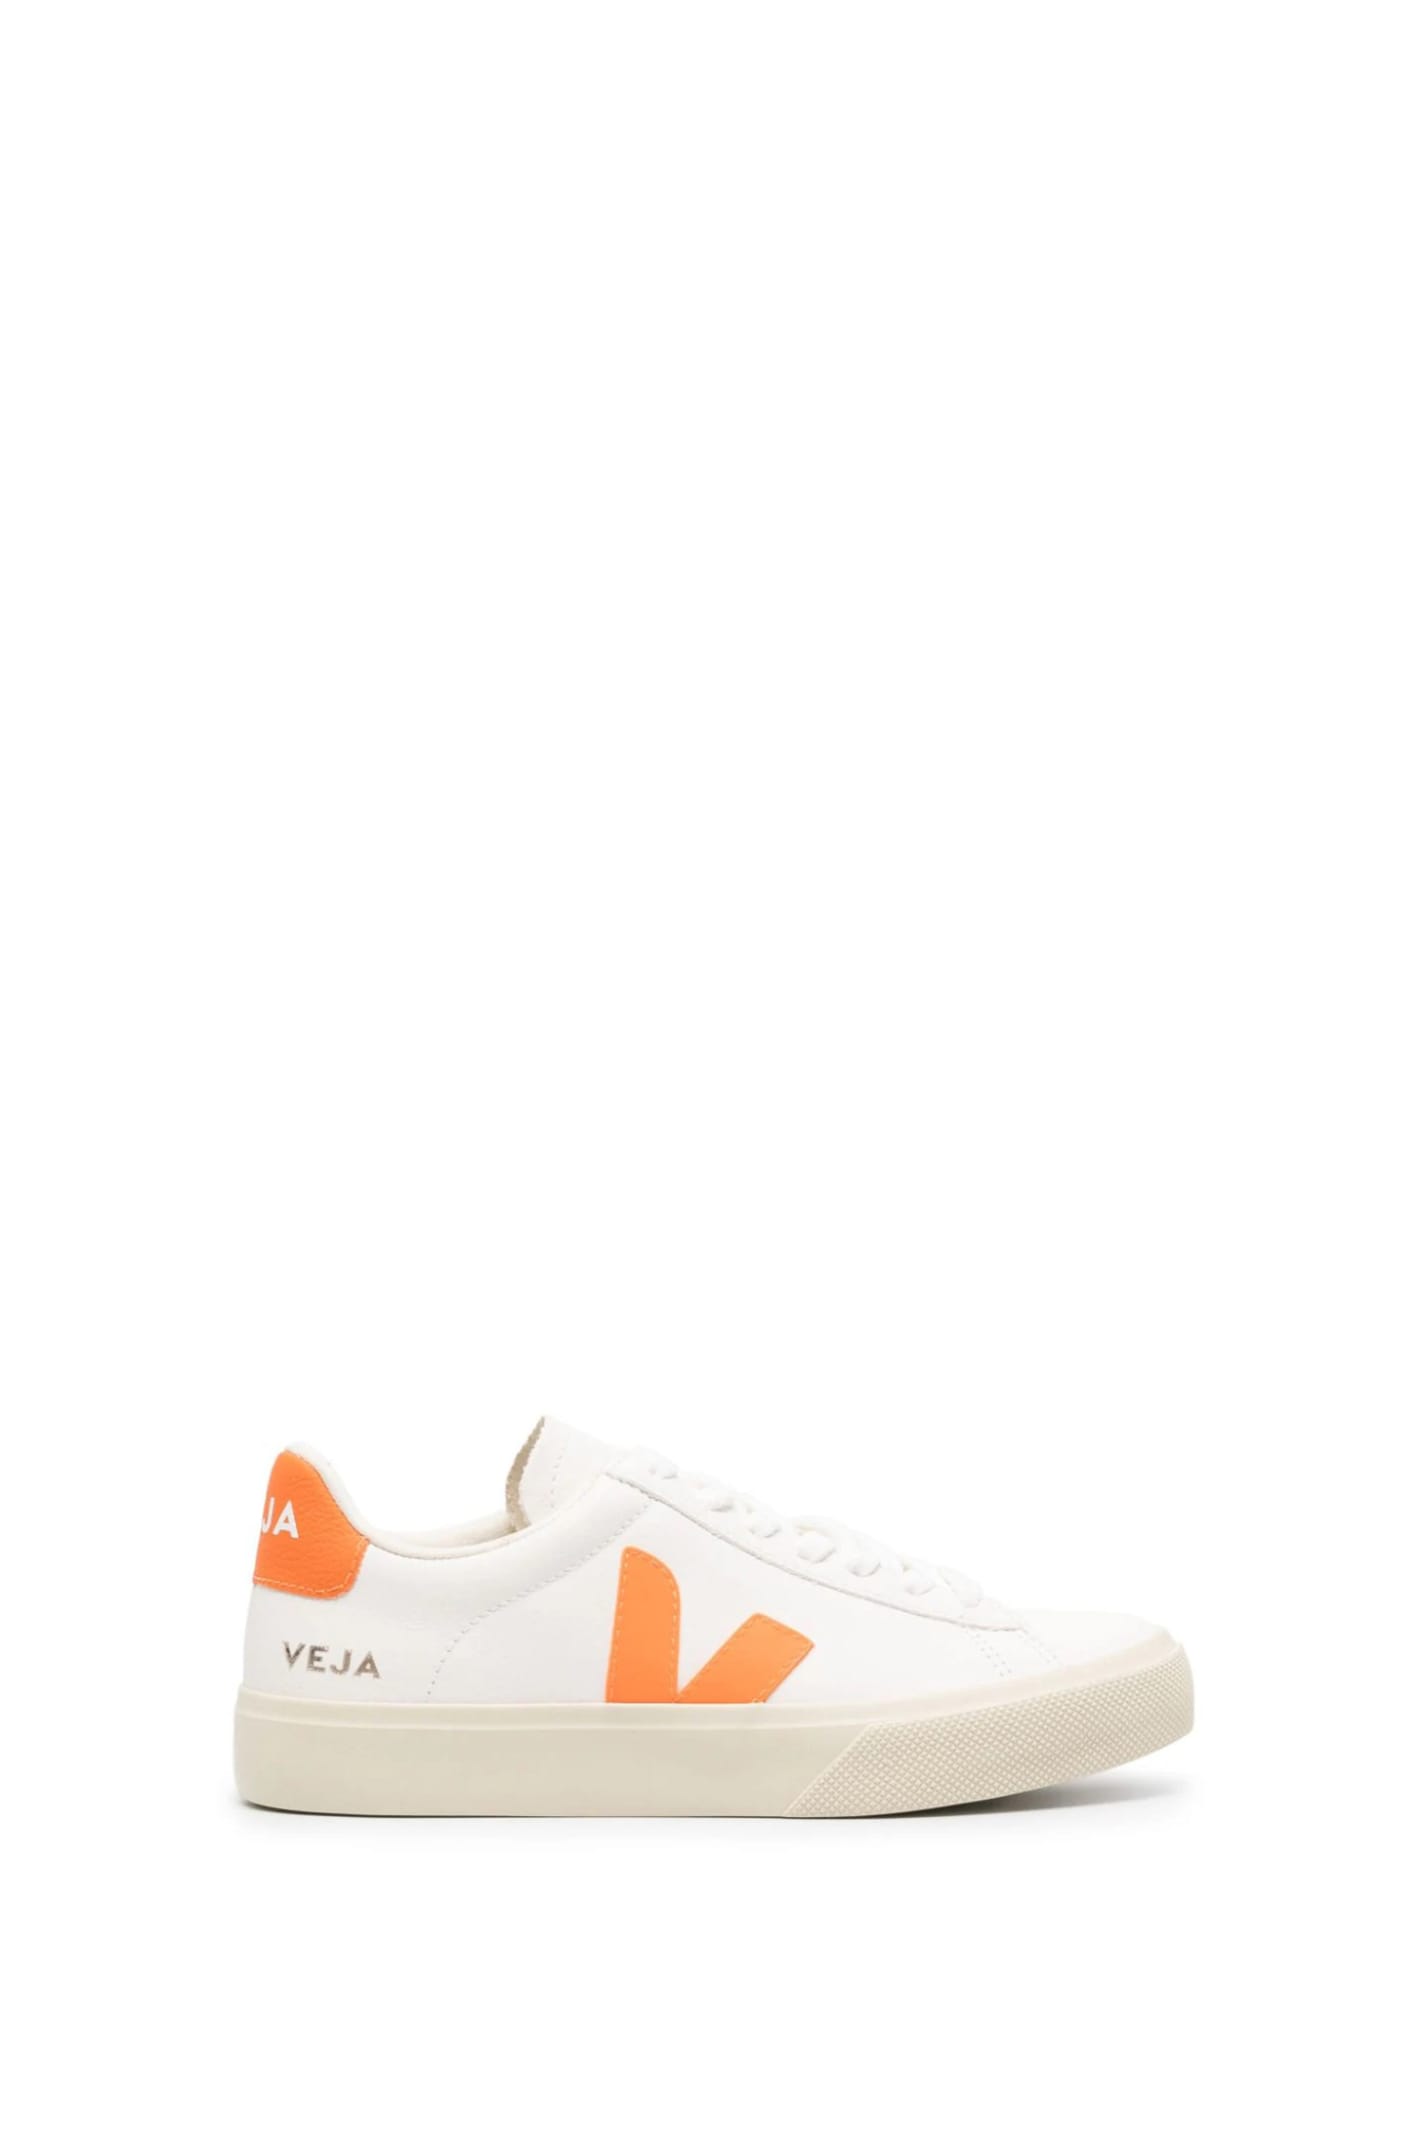 Shop Veja Sneakers In Orange